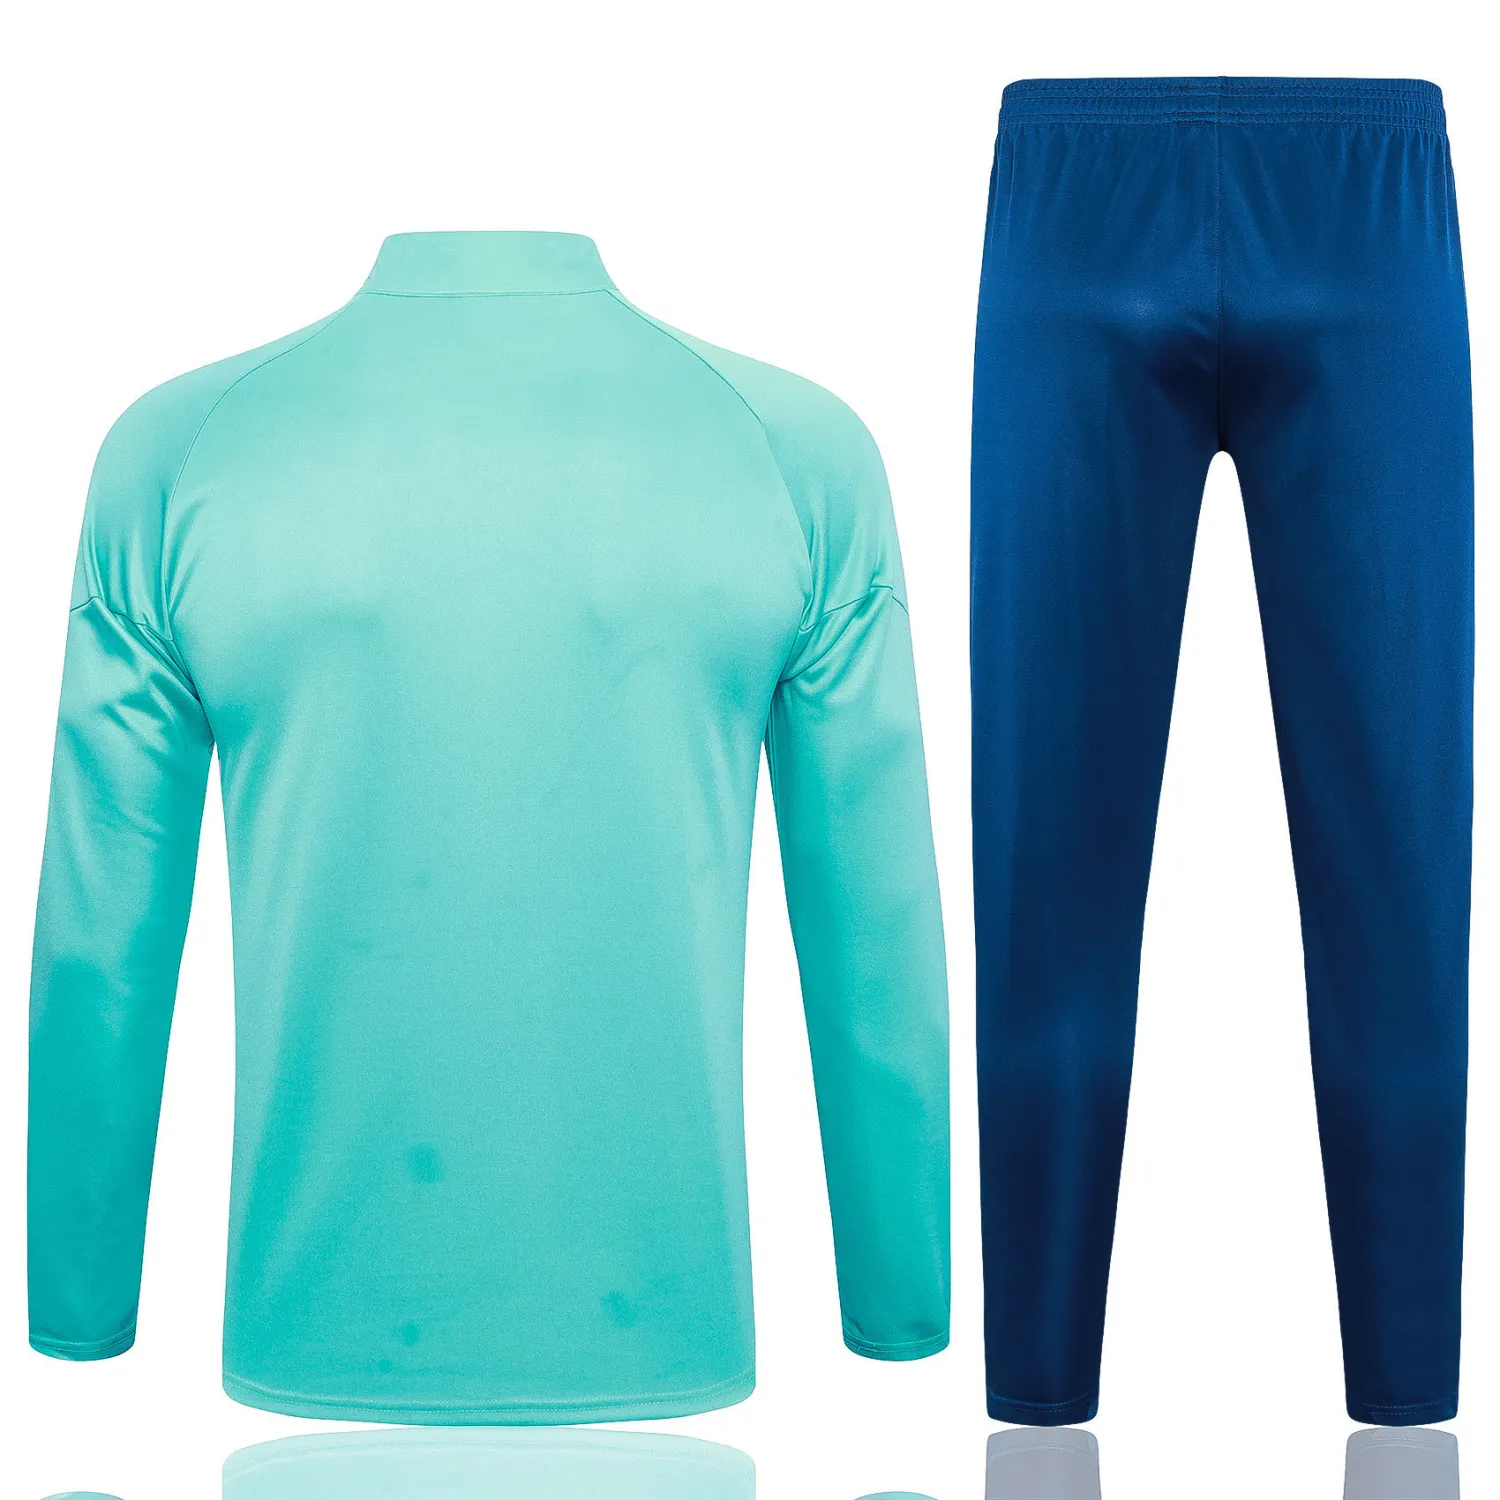 olympique marseille turquoise blue pregame training suit